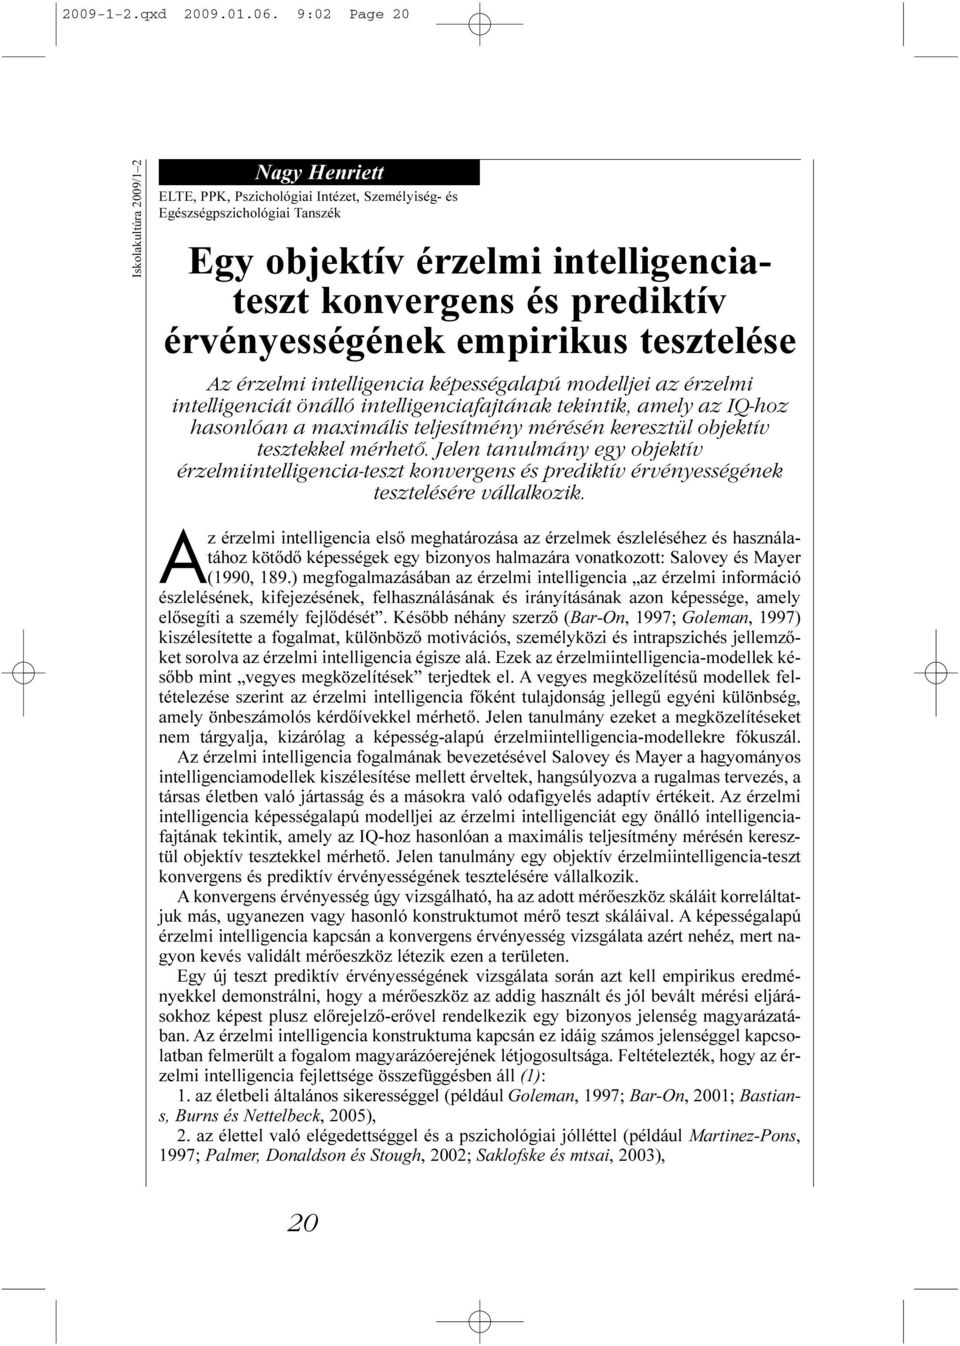 érvényességének empirikus tesztelése Az érzelmi intelligencia képességalapú modelljei az érzelmi intelligenciát önálló intelligenciafajtának tekintik, amely az IQ-hoz hasonlóan a maximális